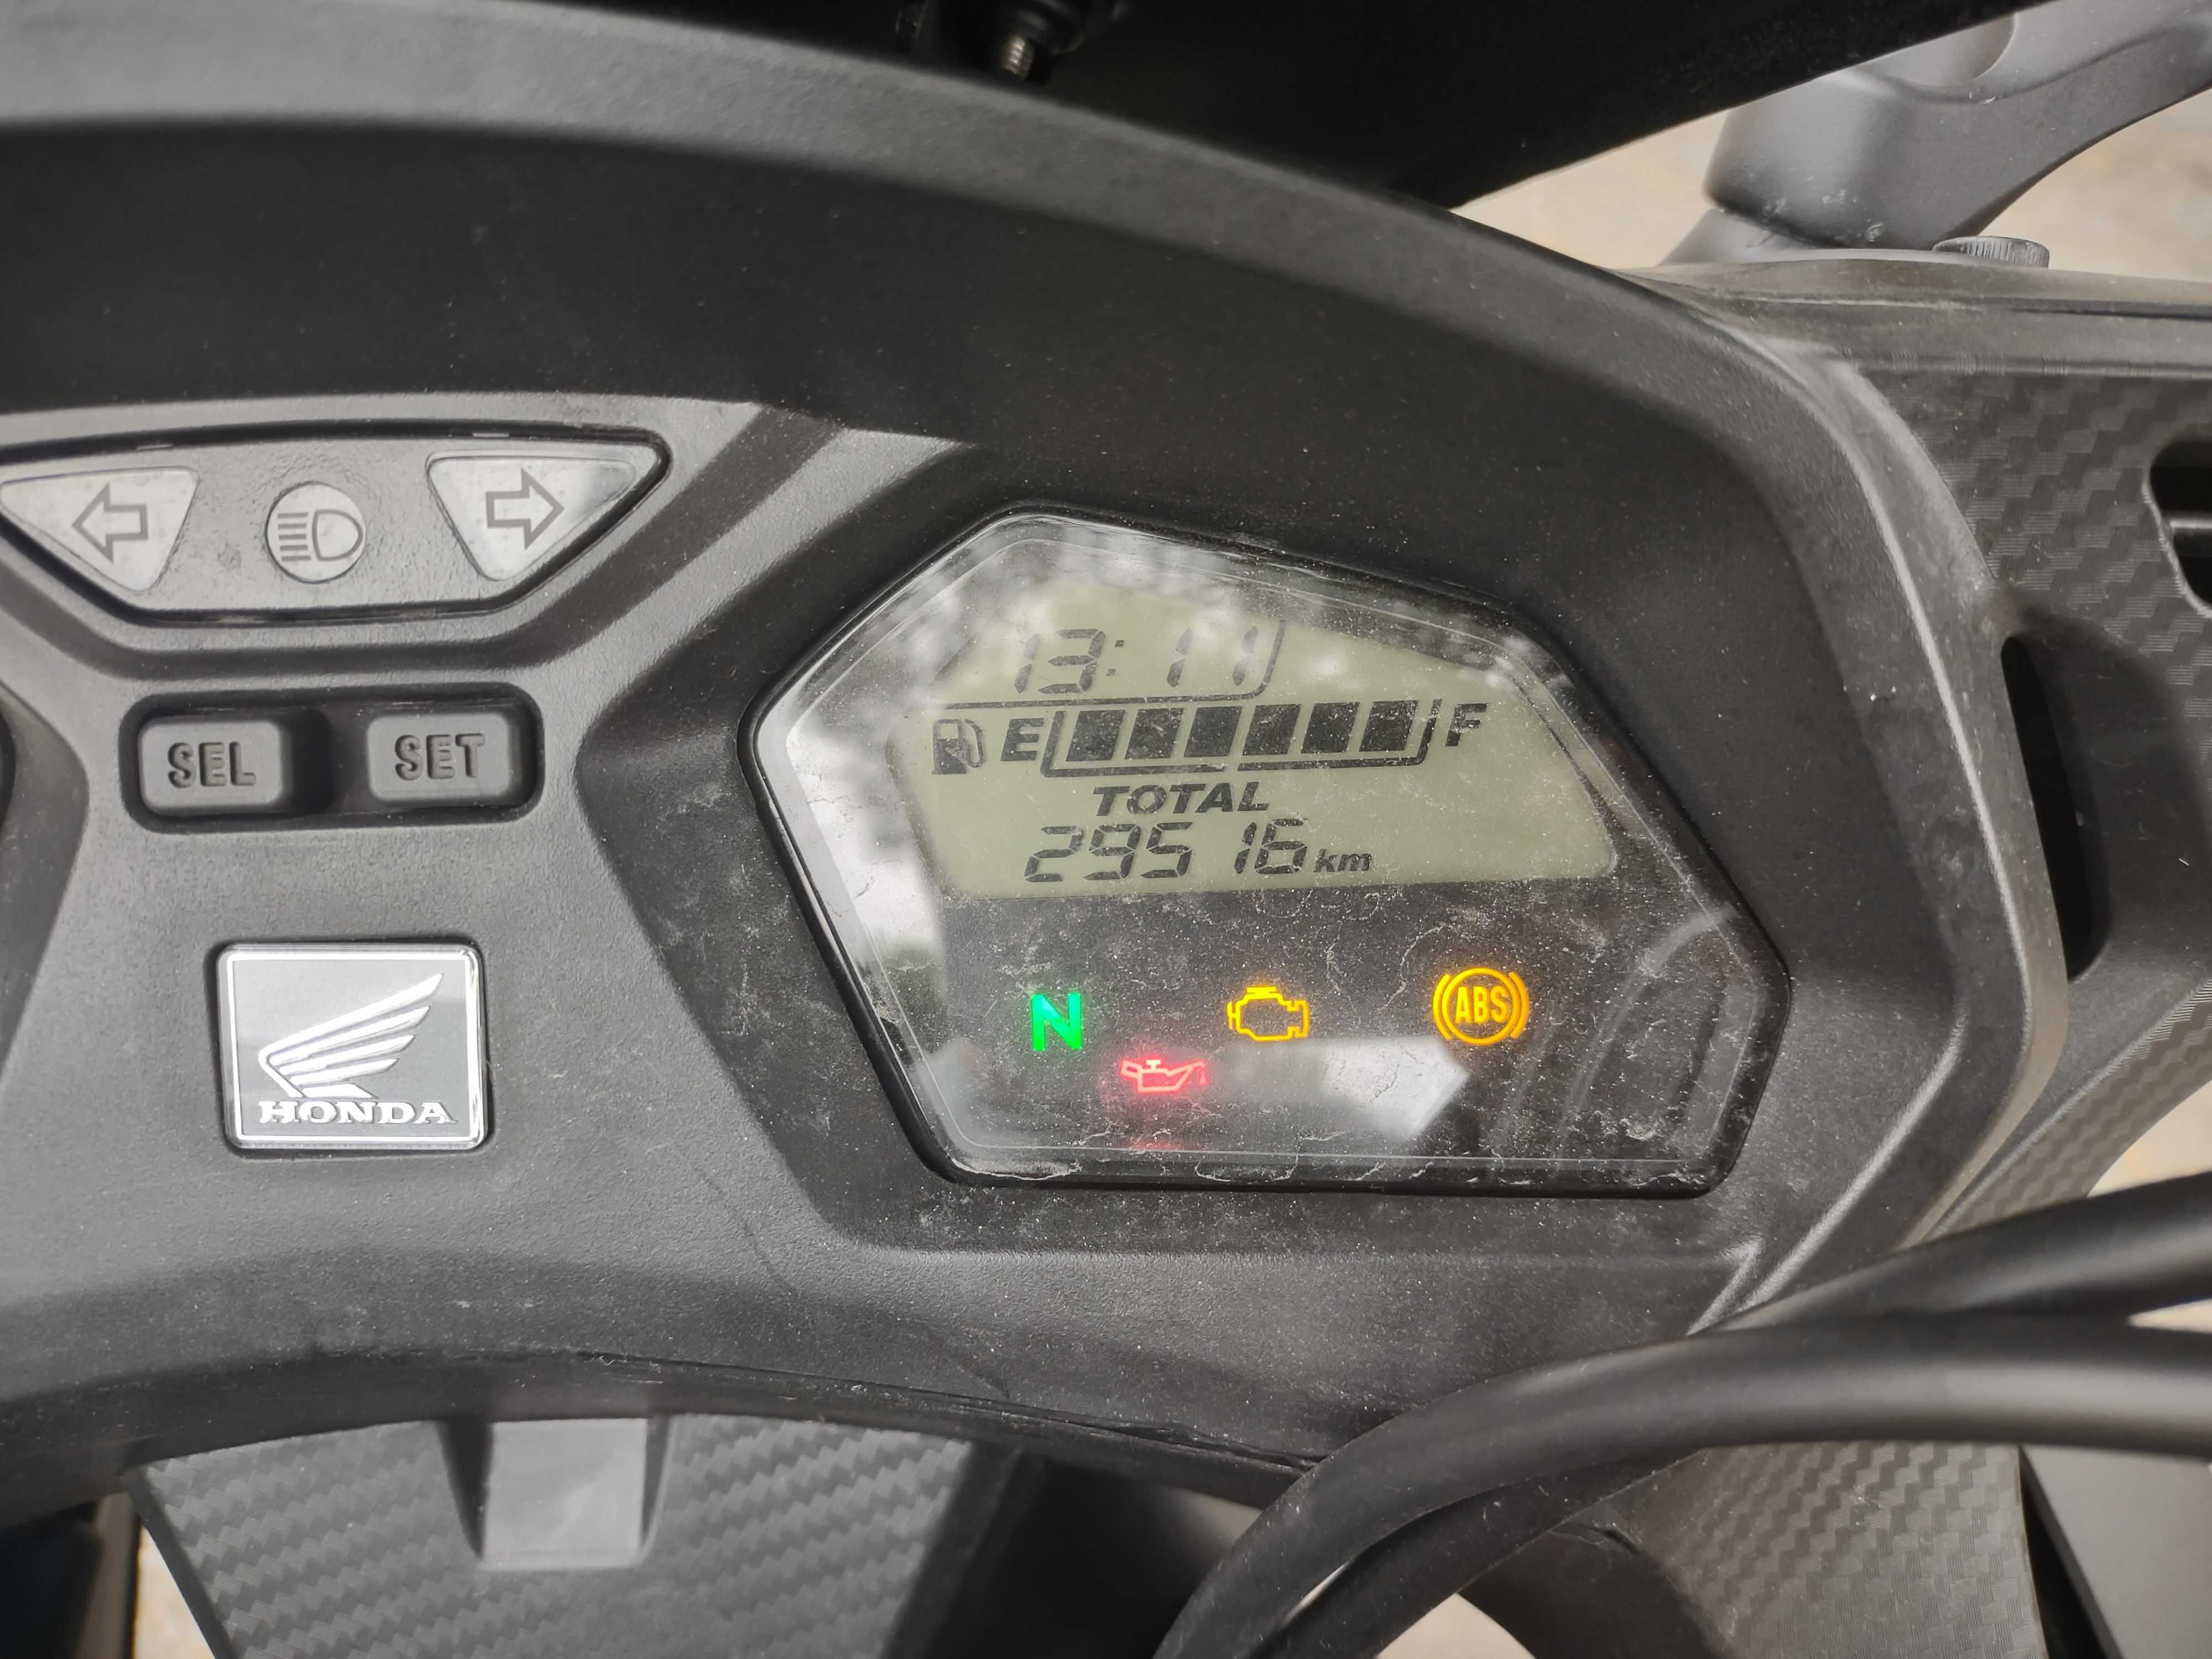 Honda CBR650F 2017 ABS